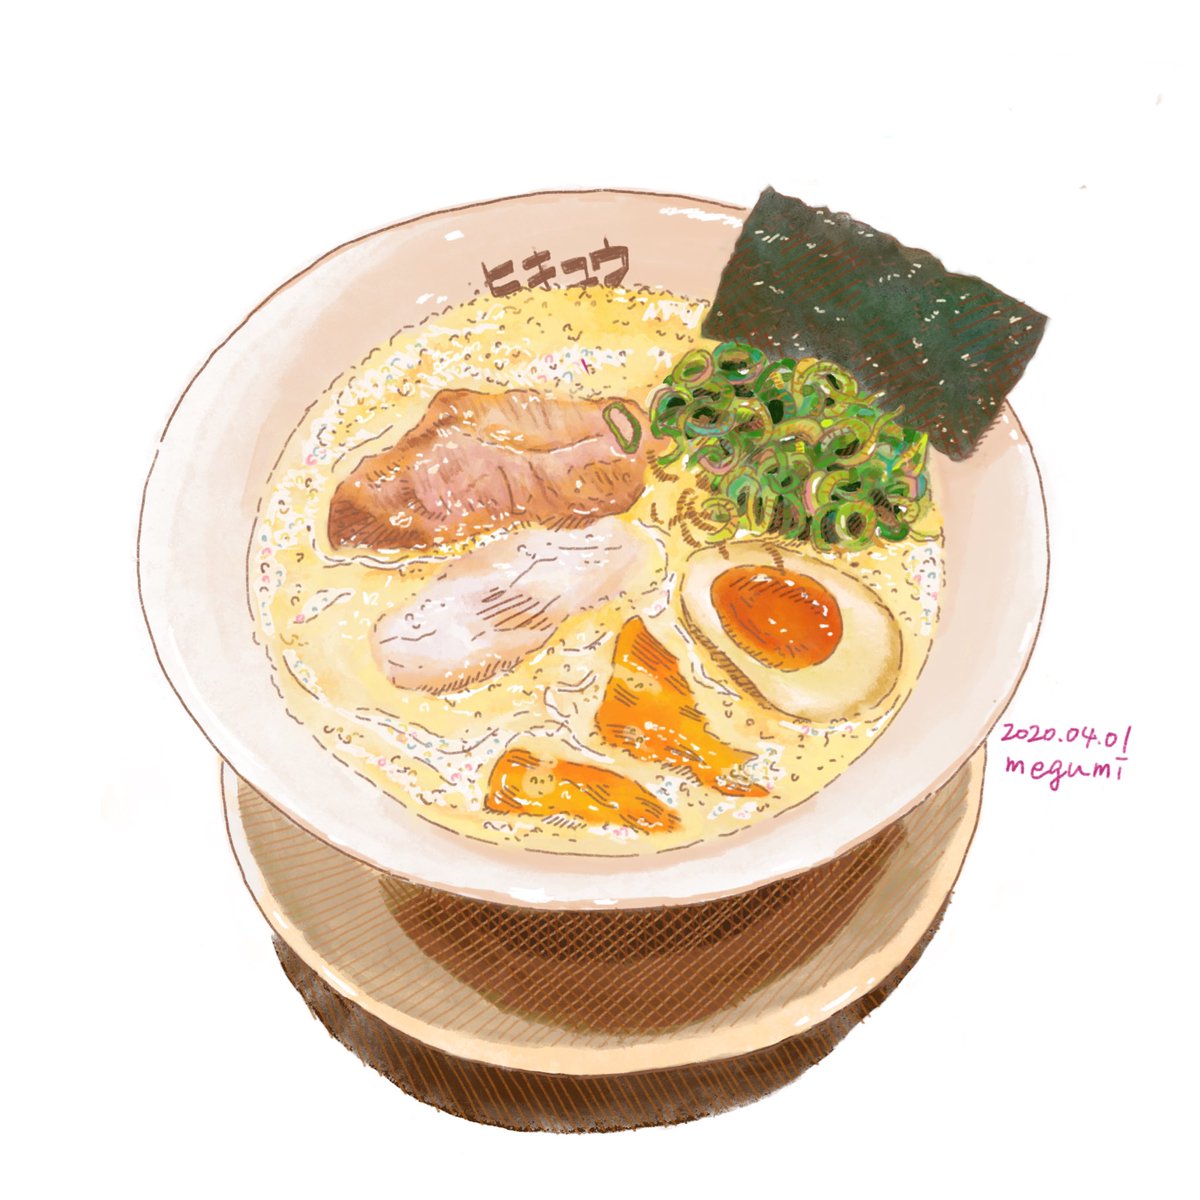 いしかわめぐみ ラーメン5日目 言わずと知れた人気店 地元では 神戸市六甲道駅のヒキュウです ここはですね なんかおしゃれなんですよ スープをブレンダーで泡立ててるし 器もシュッとしてますからね はい 食べ物イラスト イラストレーション